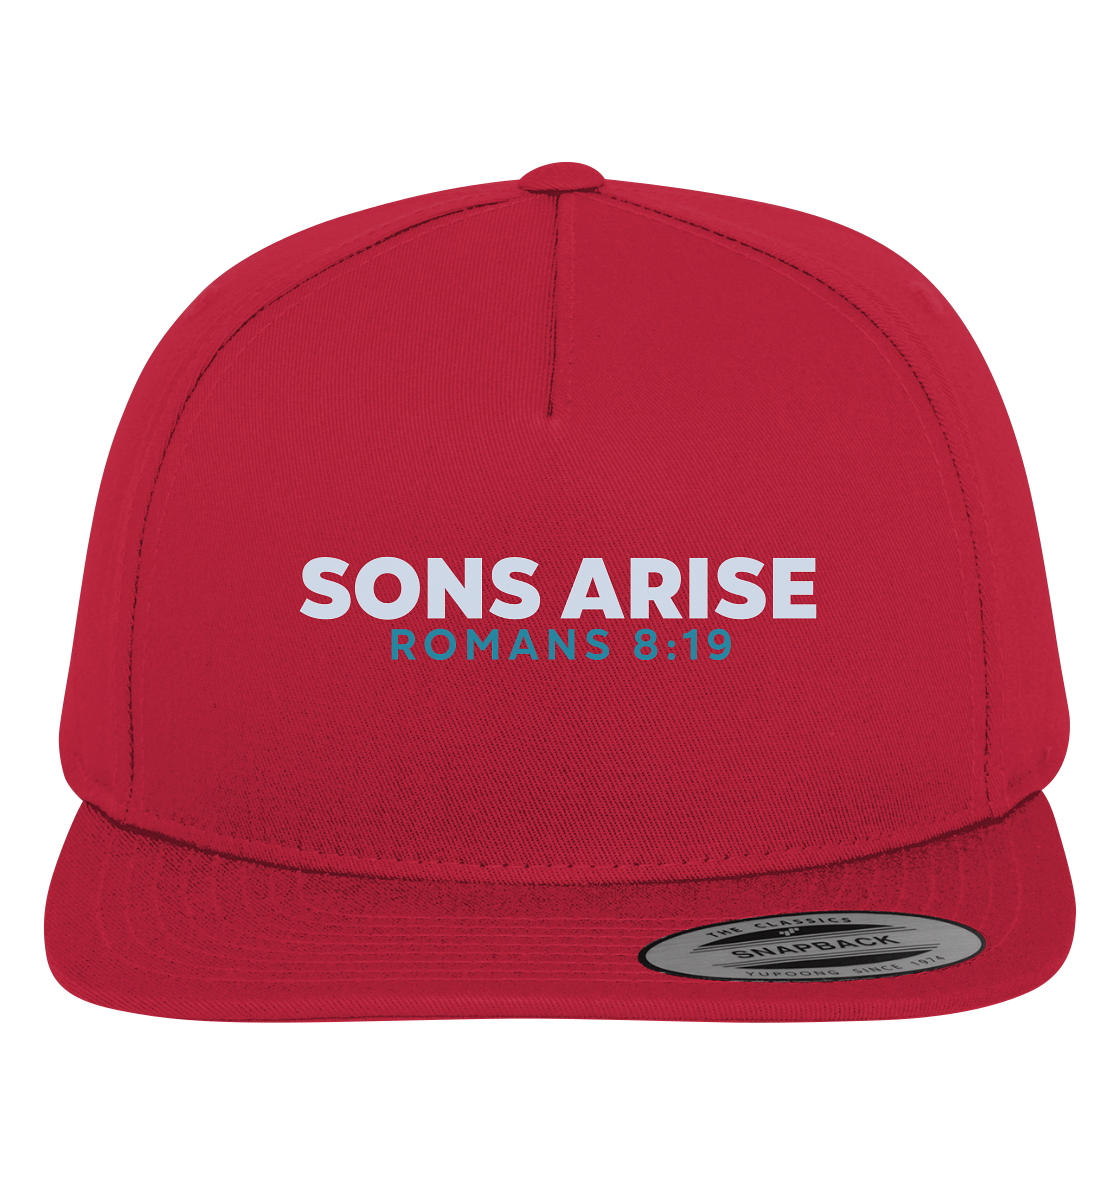 Sons Arise - Söhne Gottes - Premium Snapback